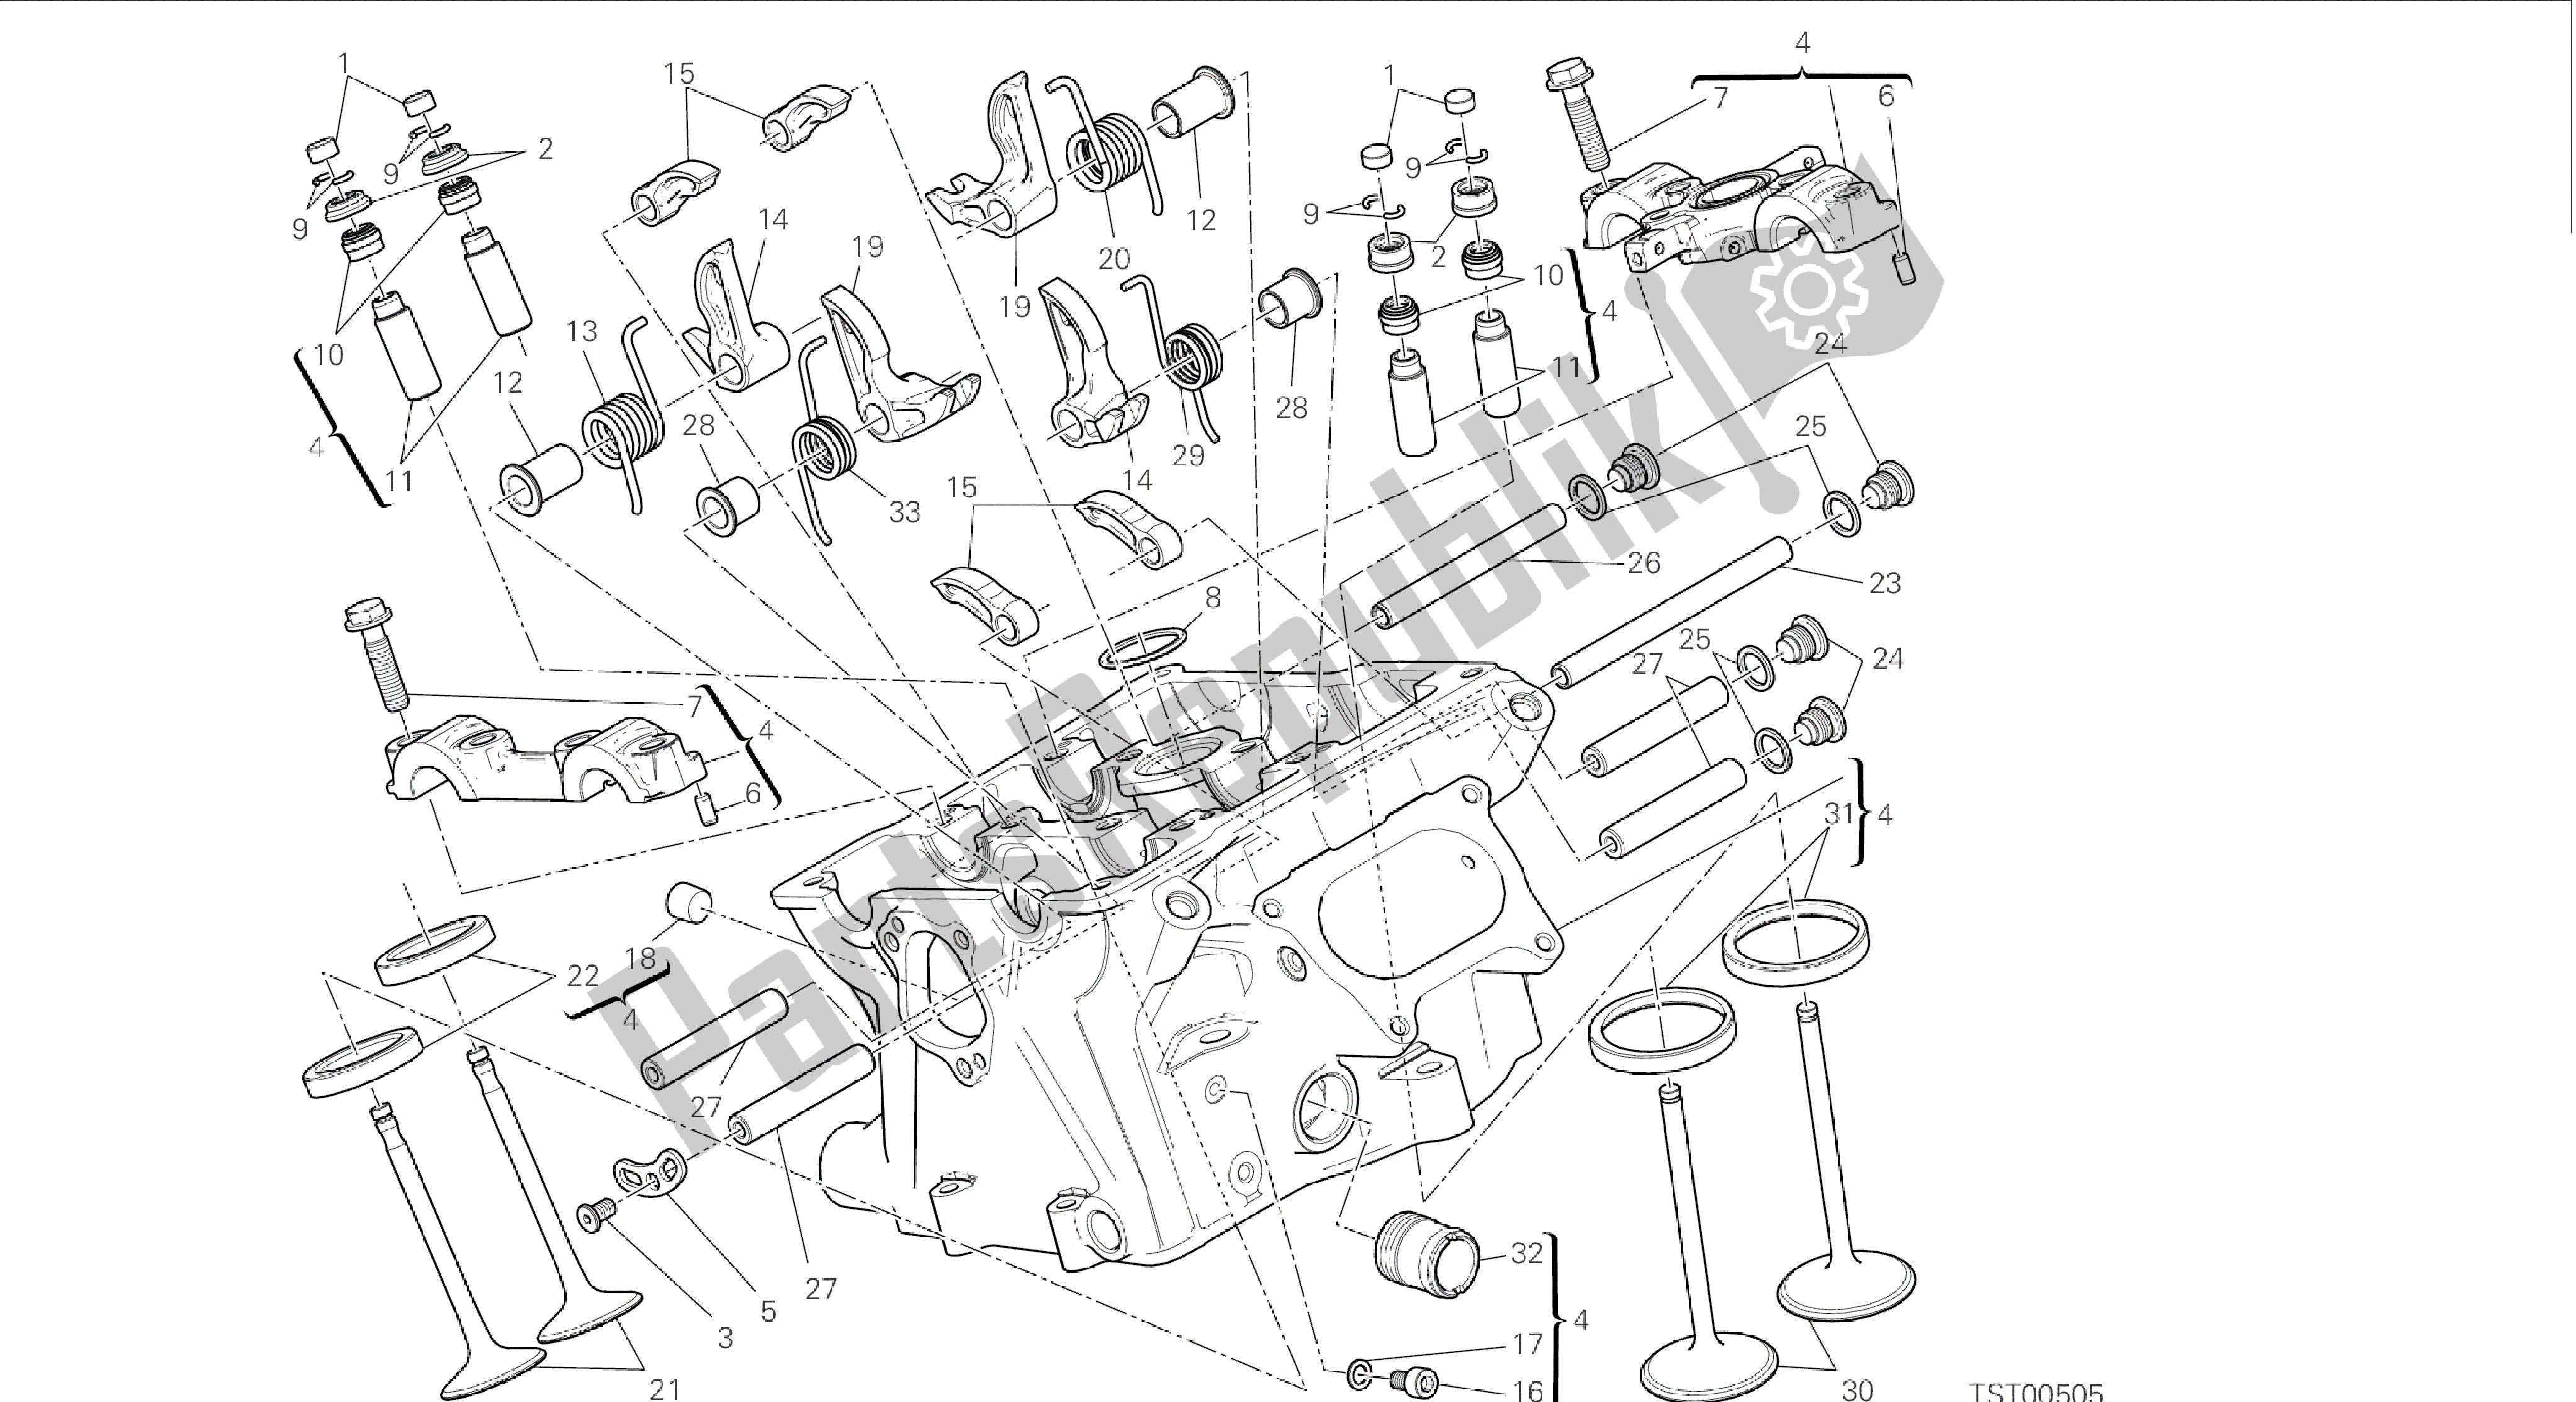 Todas las partes para Dibujo 015 - Motor De Grupo De Cabezal Vertical [mod: 899 Abs, 899 Aws] de Ducati Panigale 899 2015